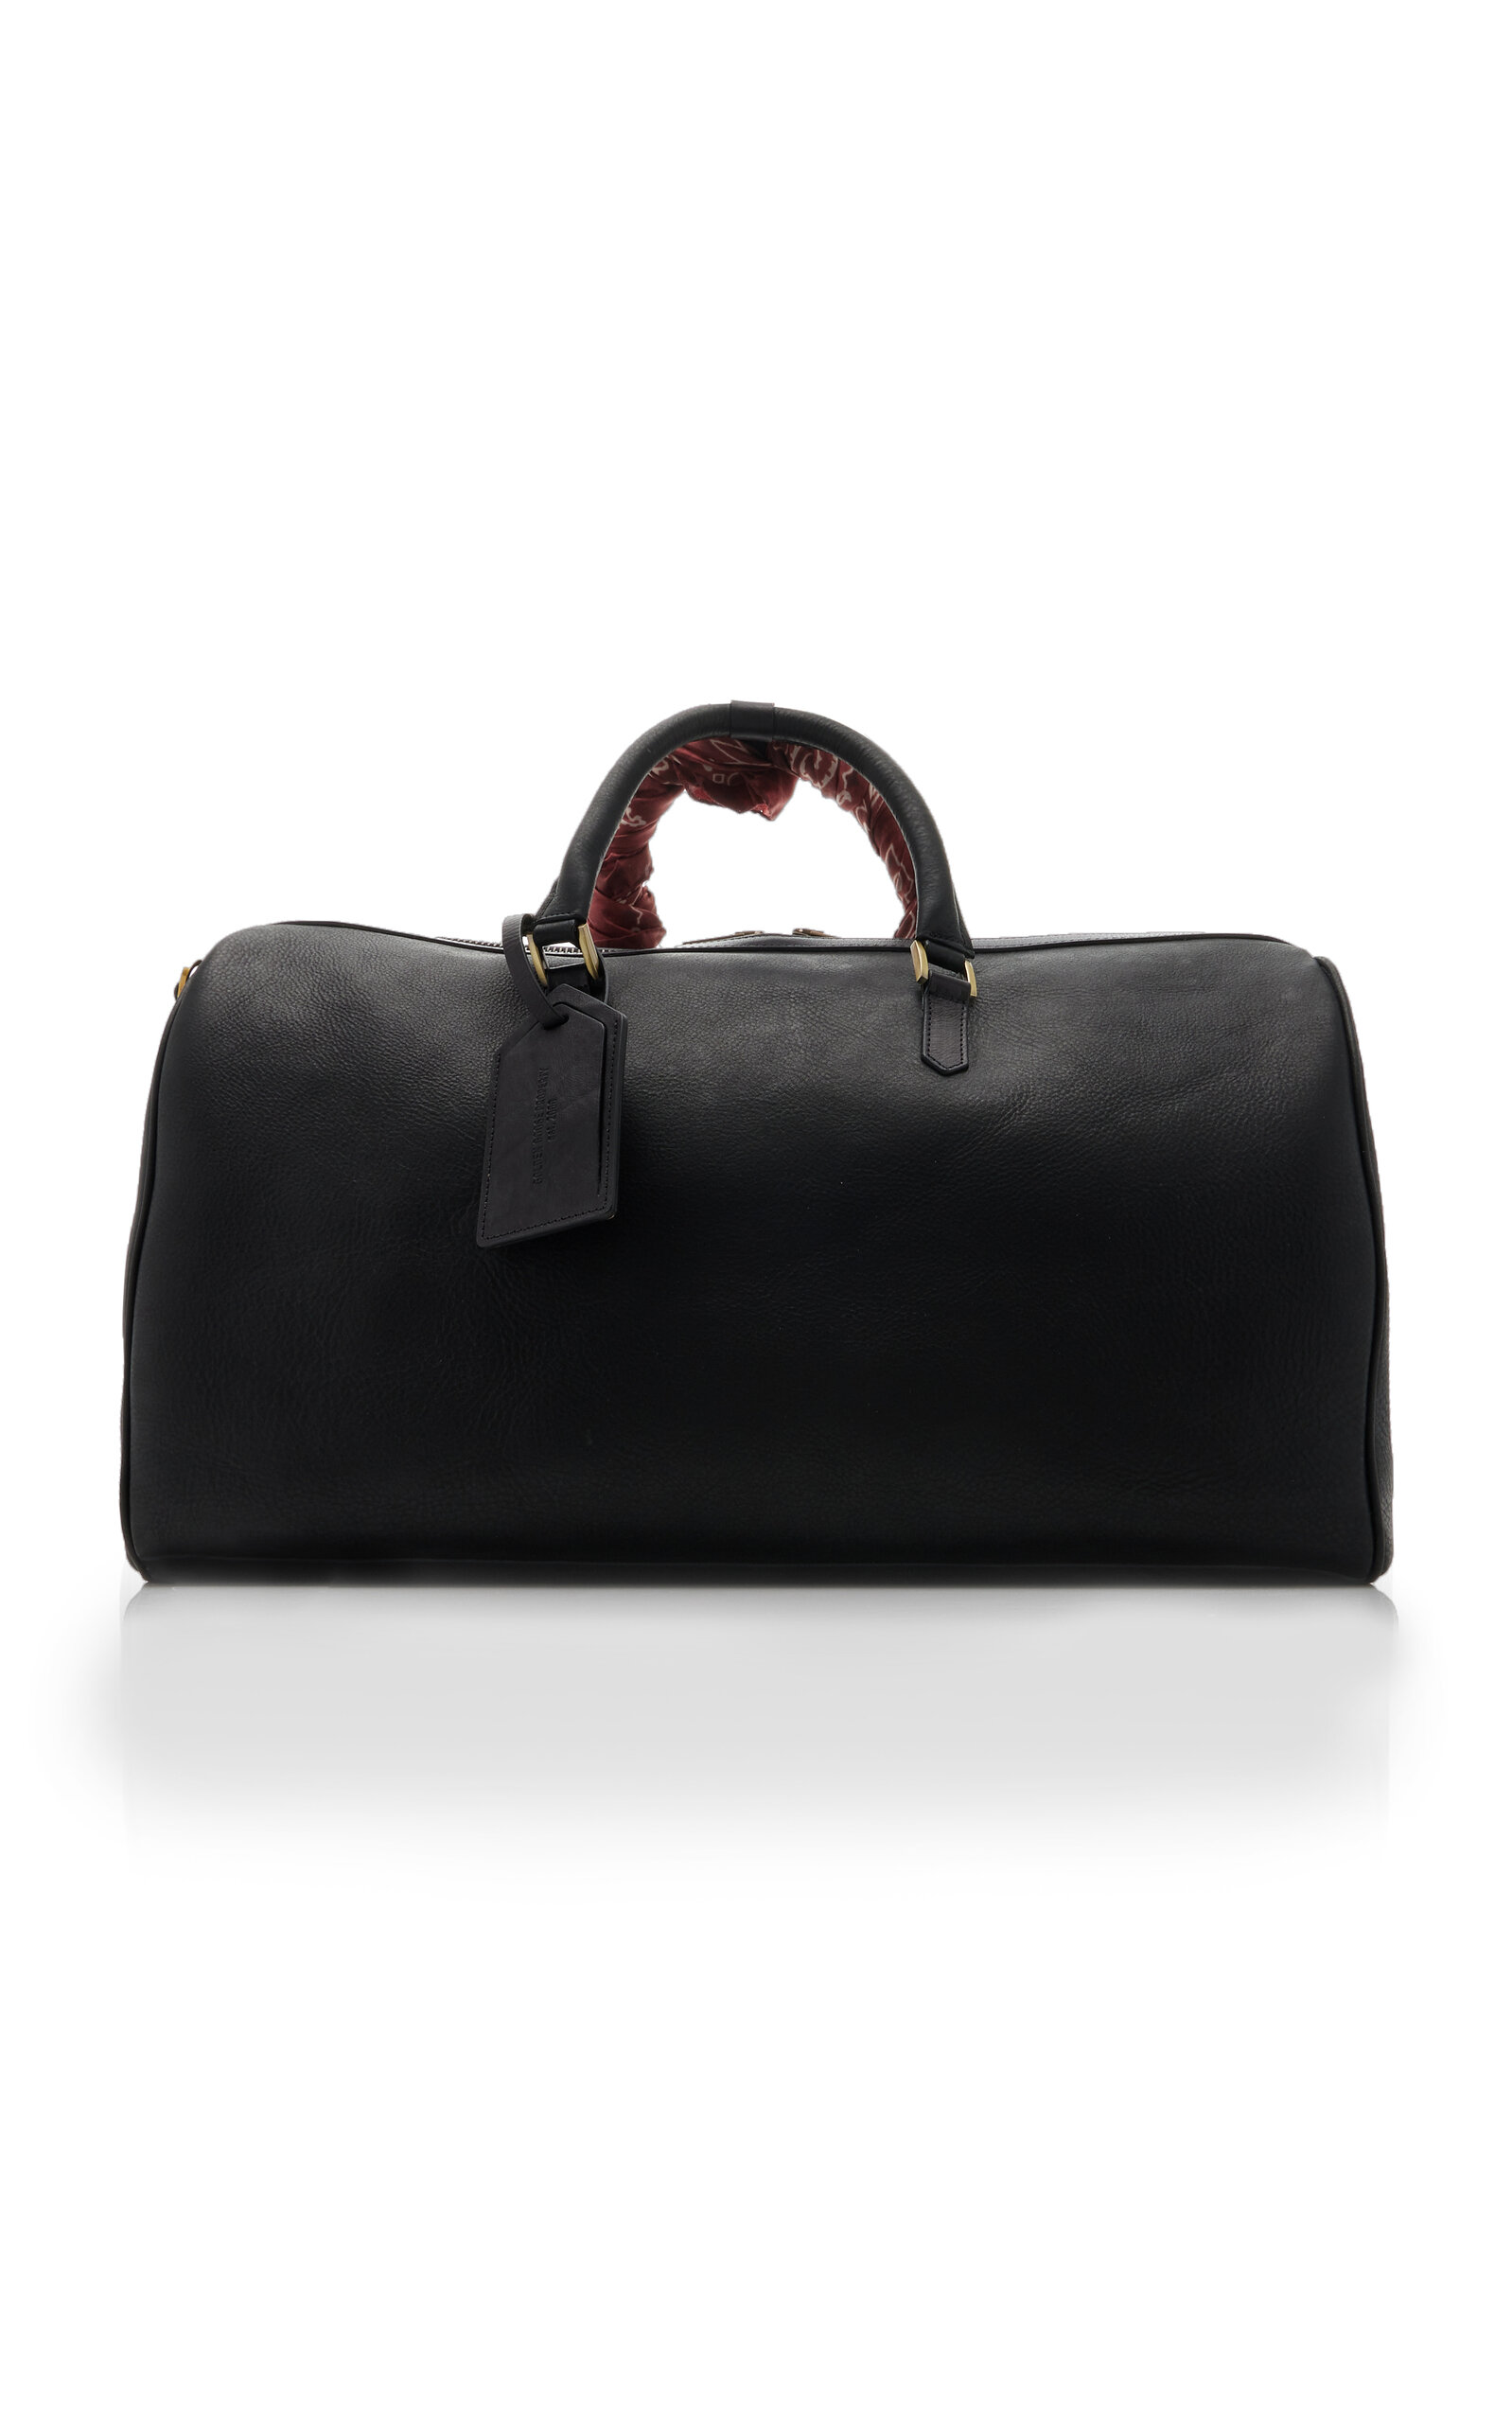 Golden Goose - Women's Leather Duffle Bag - Black - OS - Moda Operandi